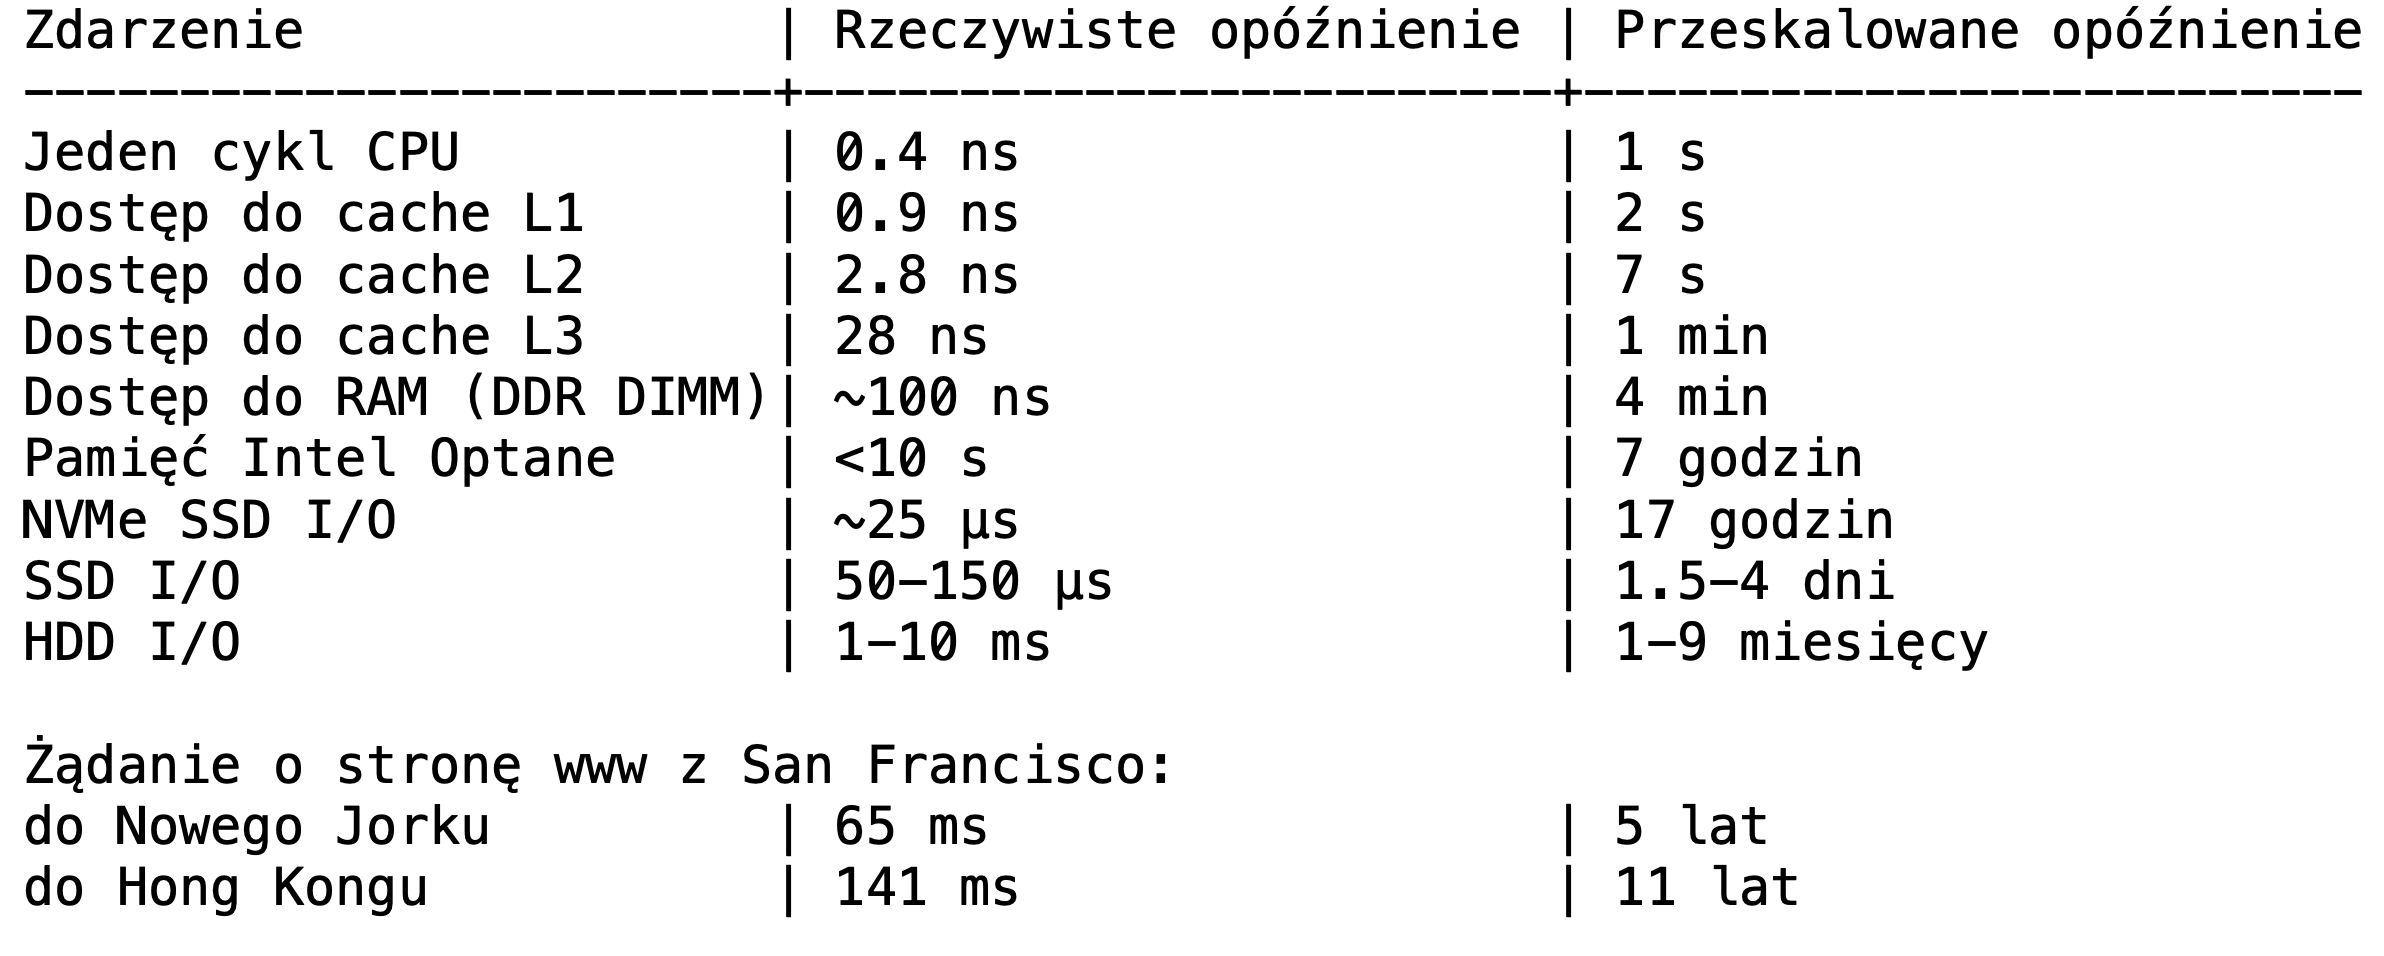 Tabela, trzy kolumny: Zdarzenie, Rzeczywiste opóźnienie, Przeskalowane opóźnienie - Jeden cykl CPU, 0.4 ns, 1 s; - Dostęp do cache L1, 0.9 ns, 2 s; - Dostęp do cache L2, 2.8 ns, 7 s; - Dostęp do cache L3, 28 ns, 1 min; - Dostęp do RAM (DDR DIMM), ~100 ns, 4 min; - Pamięć Intel Optane, <10 s, 7 godzin; - NVMe SSD I/O, około 25 μs, 17 godzin; - SSD I/O, 50-150 μs, 1.5-4 dni; - HDD I/O, 1-10 ms, 1-9 miesięcy. Żądanie o stronę www z San Francisco: - do Nowego Jorku, 65 ms, 5 lat; - do Hong Kongu, 141 ms, 11 lat.